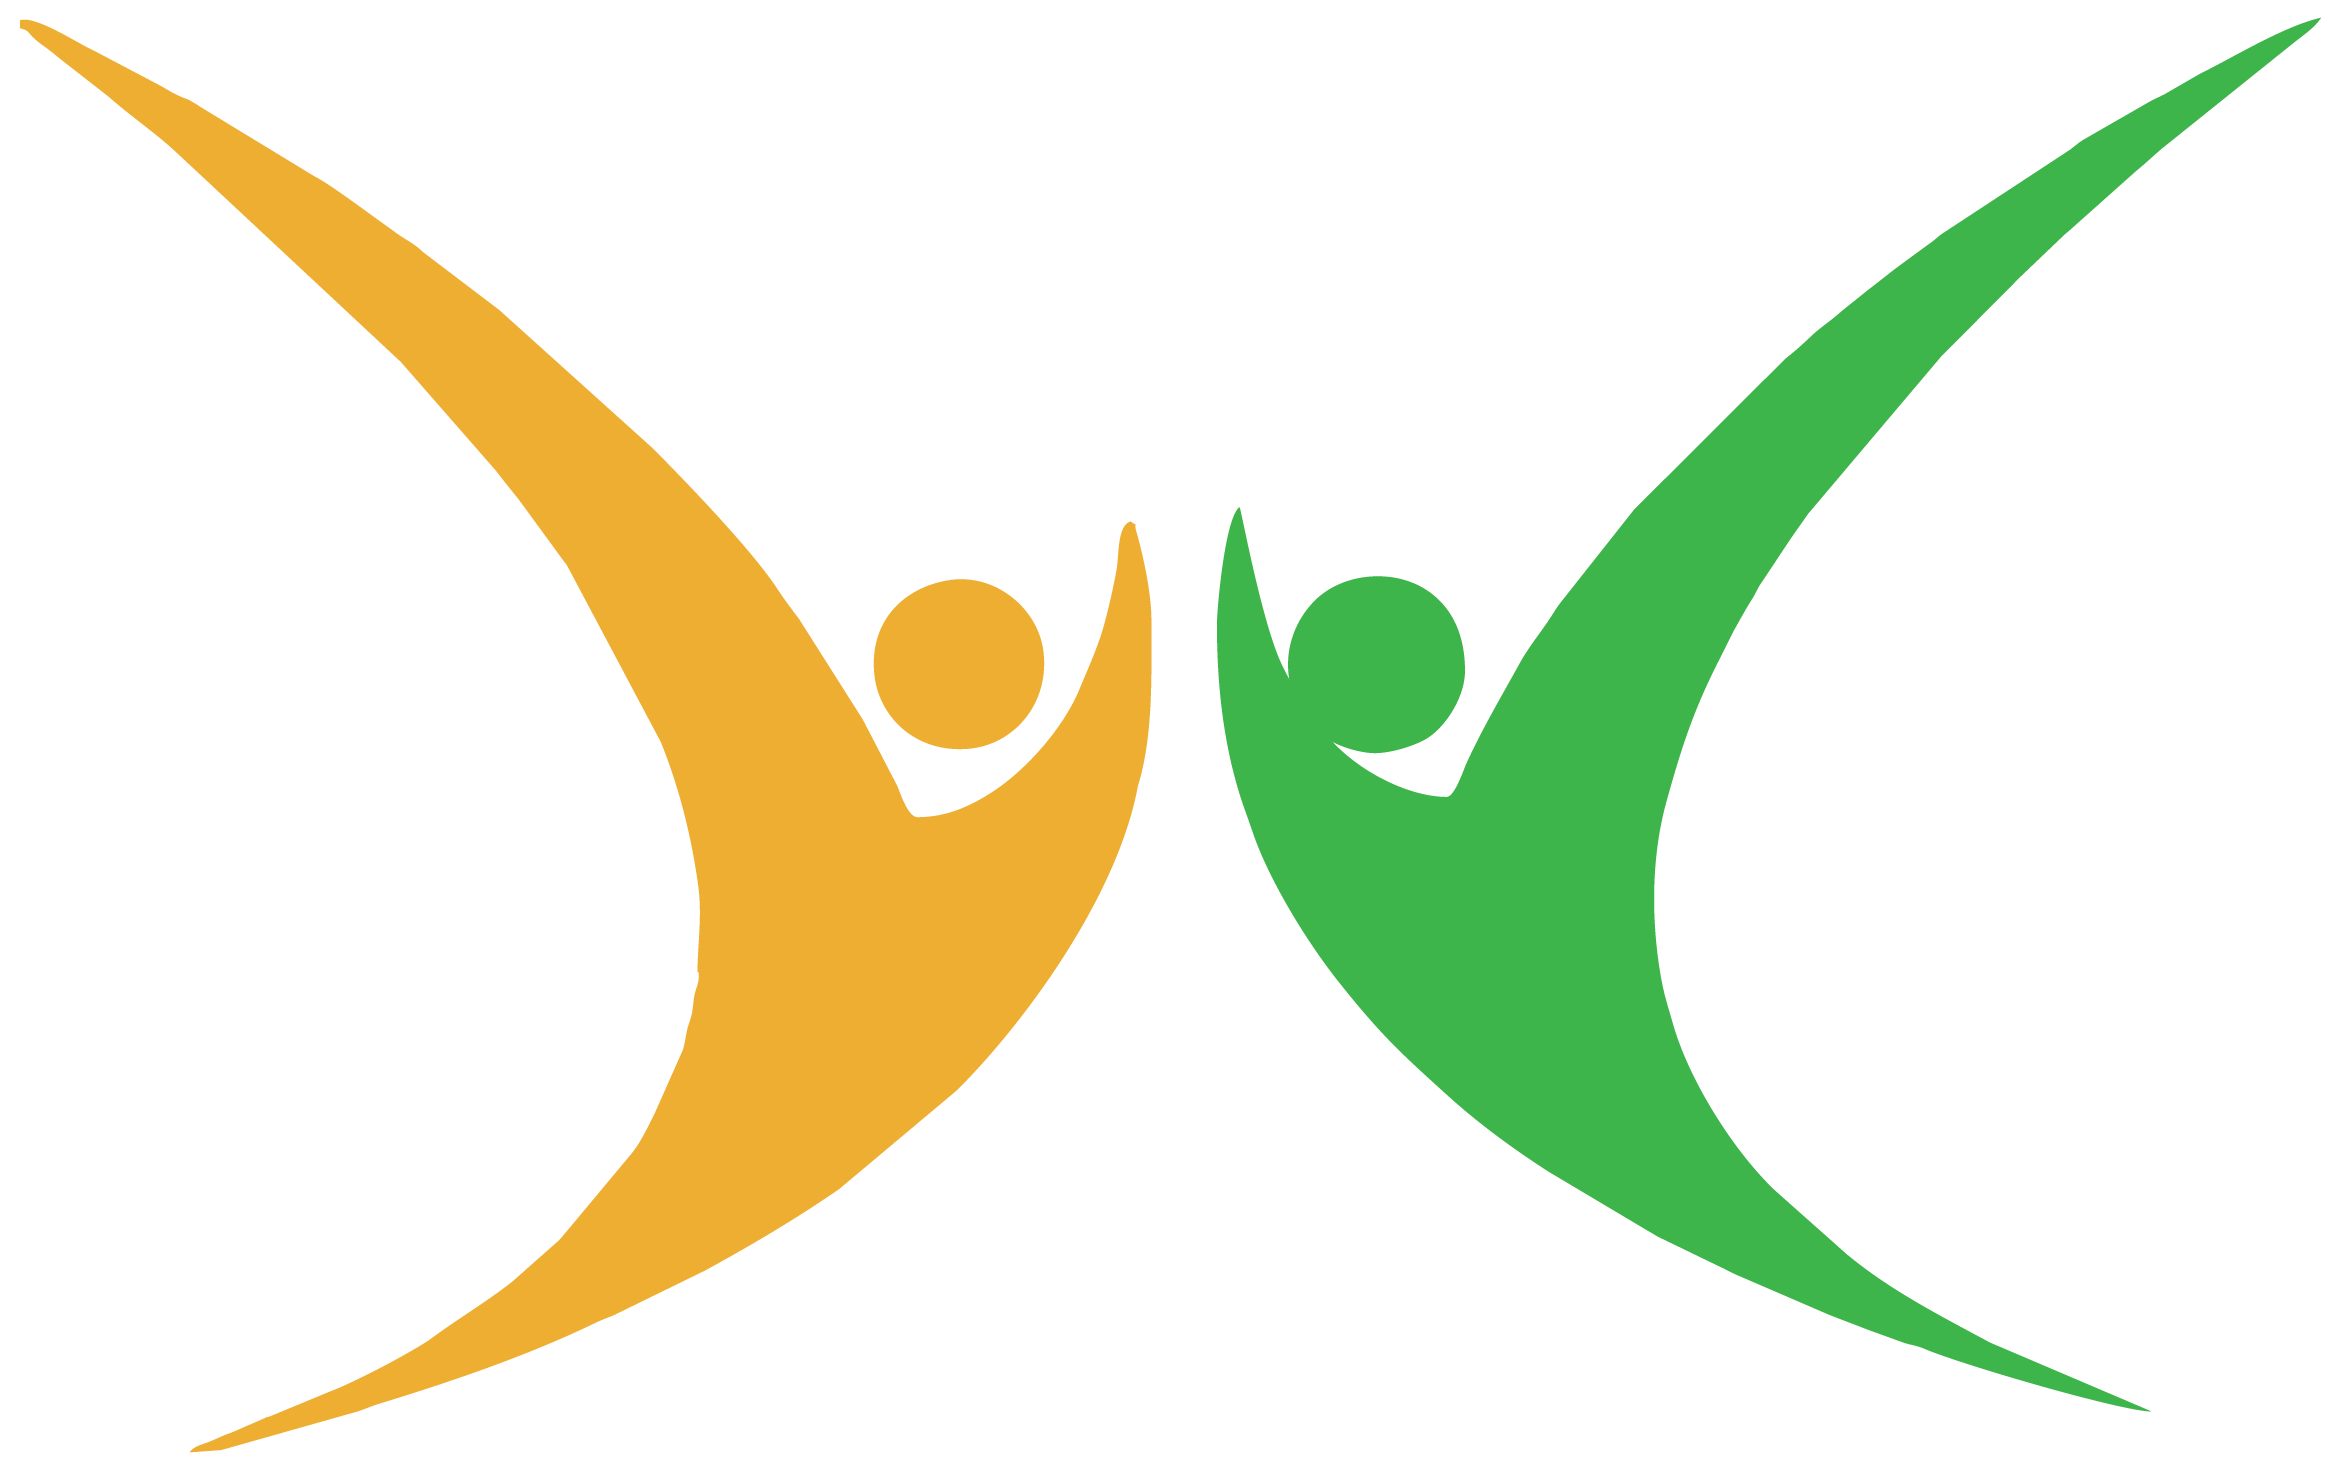 sanchar saathi